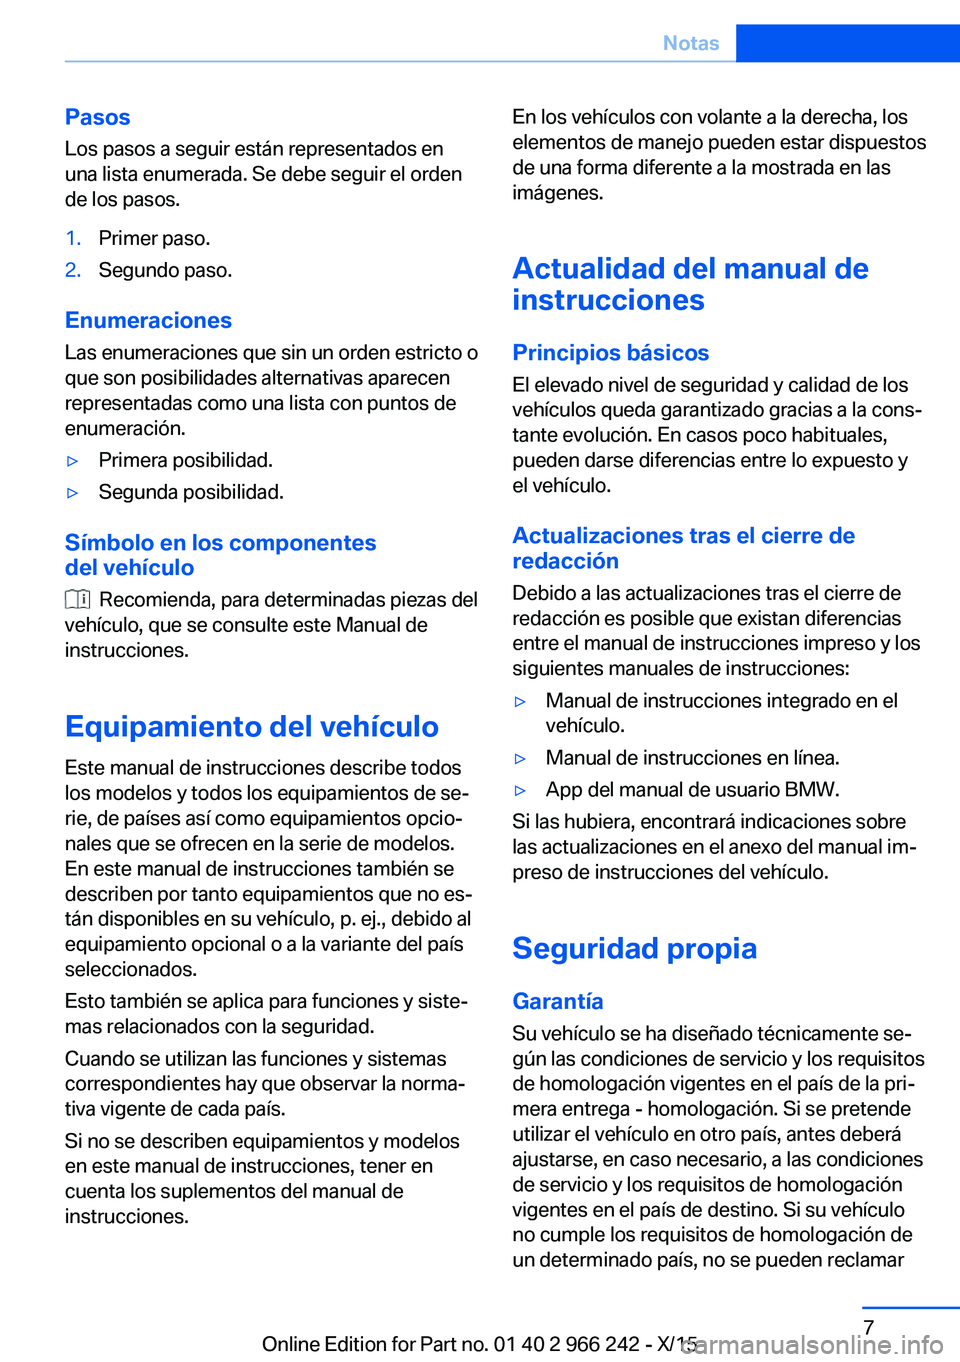 BMW 4 SERIES GRAN COUPE 2016  Manuales de Empleo (in Spanish) Pasos
Los pasos a seguir están representados en
una lista enumerada. Se debe seguir el orden
de los pasos.1.Primer paso.2.Segundo paso.
Enumeraciones
Las enumeraciones que sin un orden estricto o
que